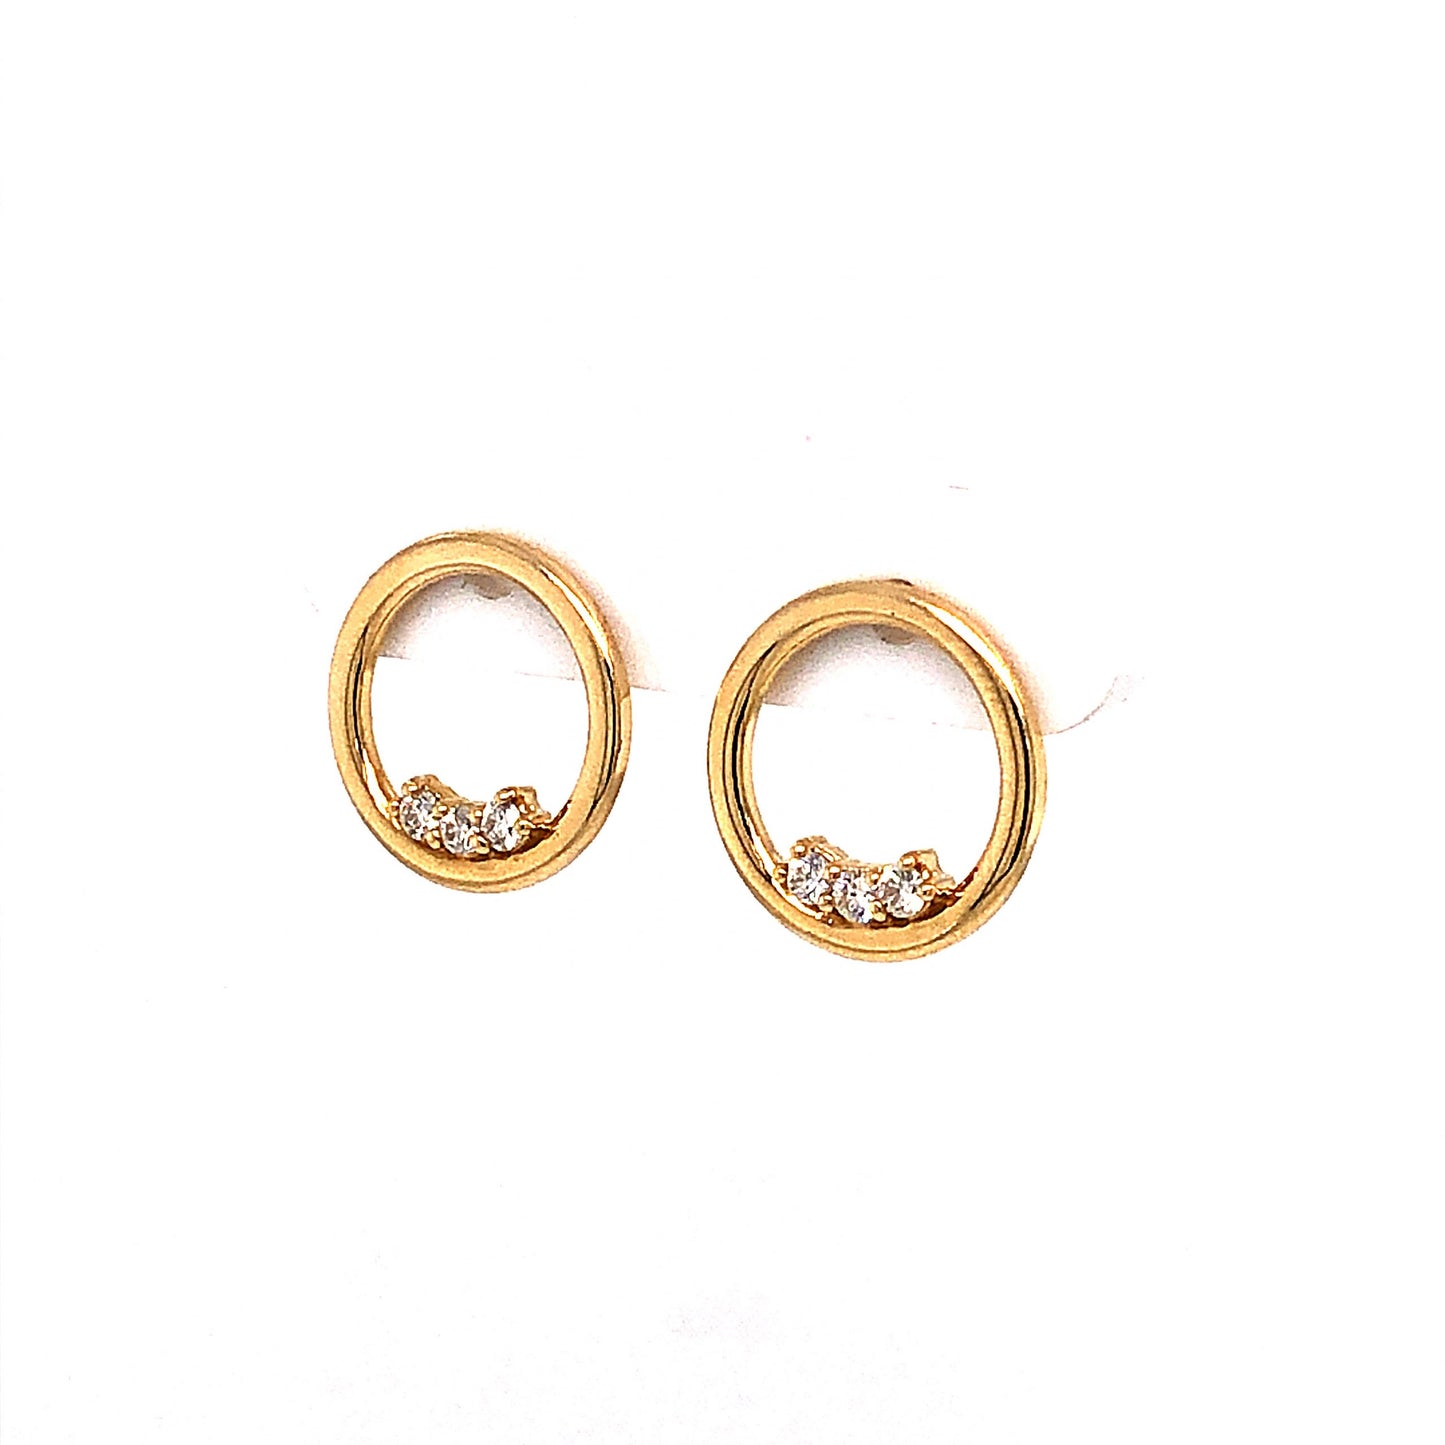 Circular .15 Diamond Stud Earrings in 14k Yellow Gold